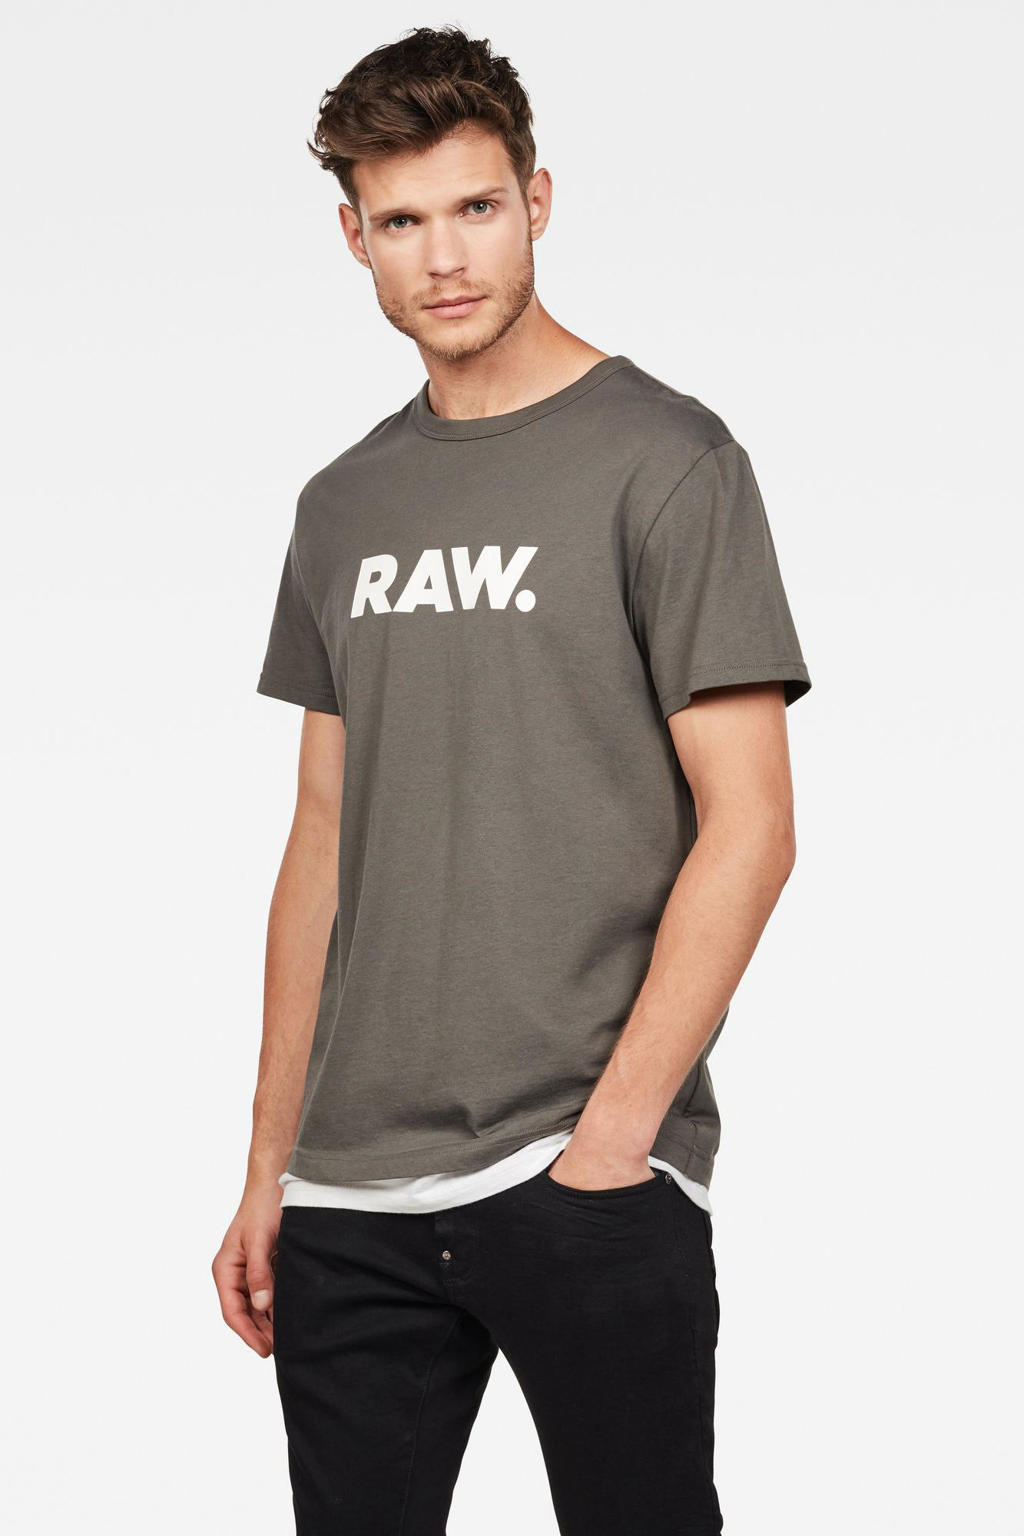 Donkergroen en witte heren G-Star RAW Holorn T-shirt van biologisch katoen met logo dessin, korte mouwen en ronde hals